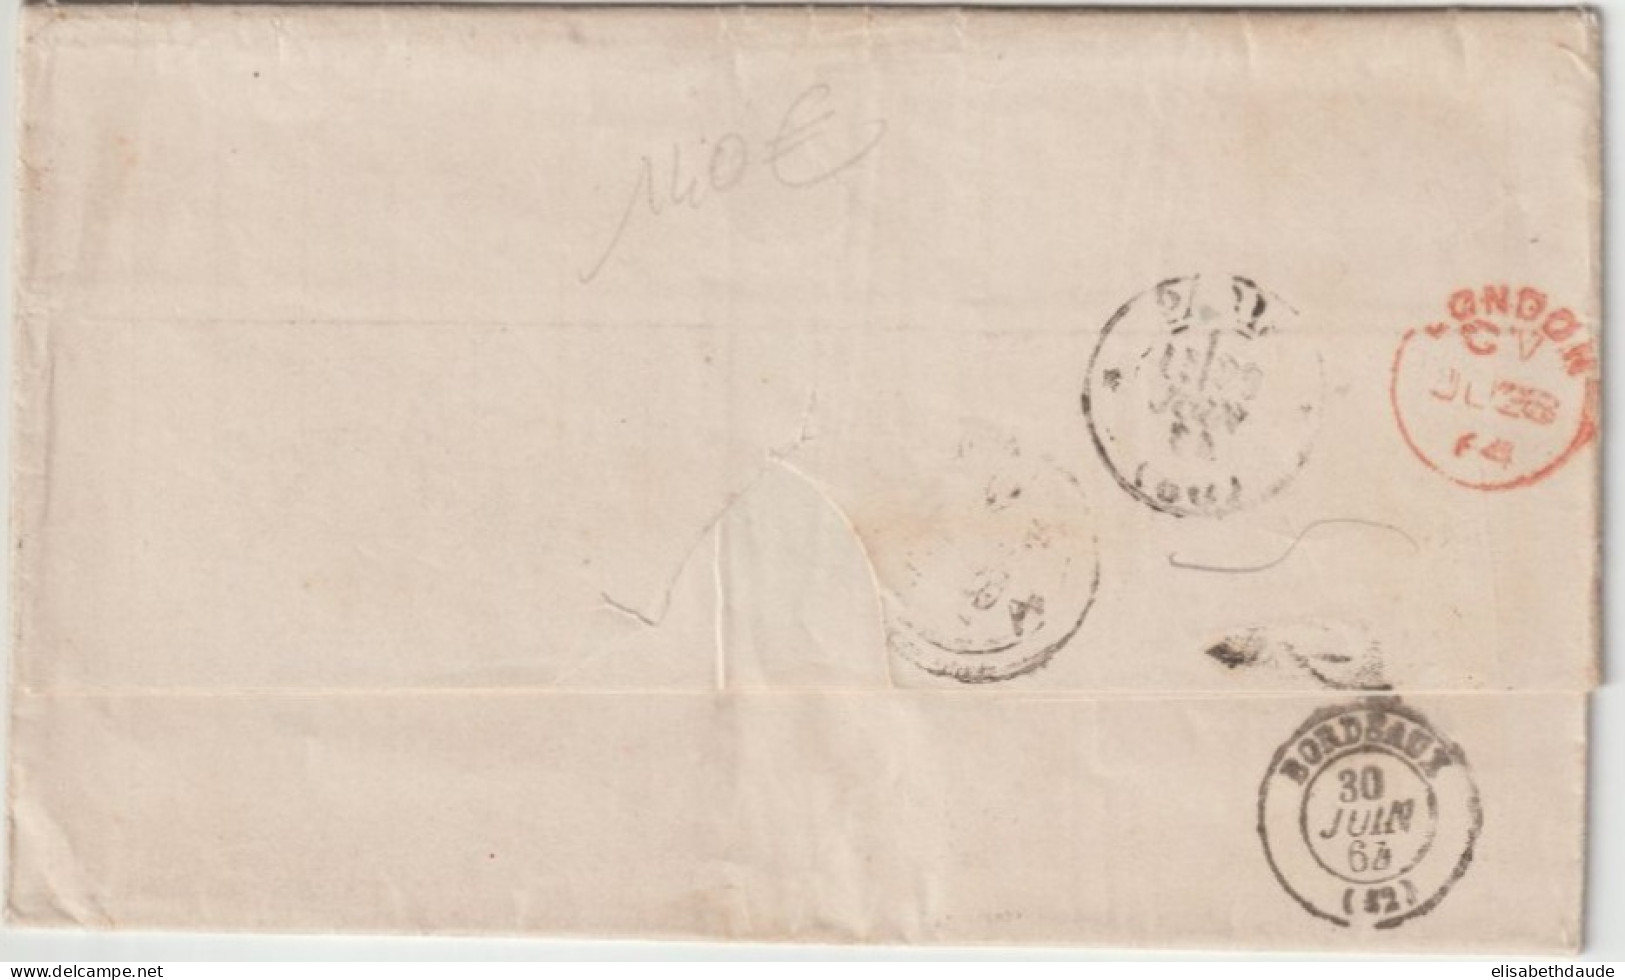 1864 - ENTREE MARITIME VOIE ANGLAISE (AMBULANT) + MARQUE D'ECHANGE 1F60c Sur LETTRE De HABANA (C UBA) ! - Maritime Post